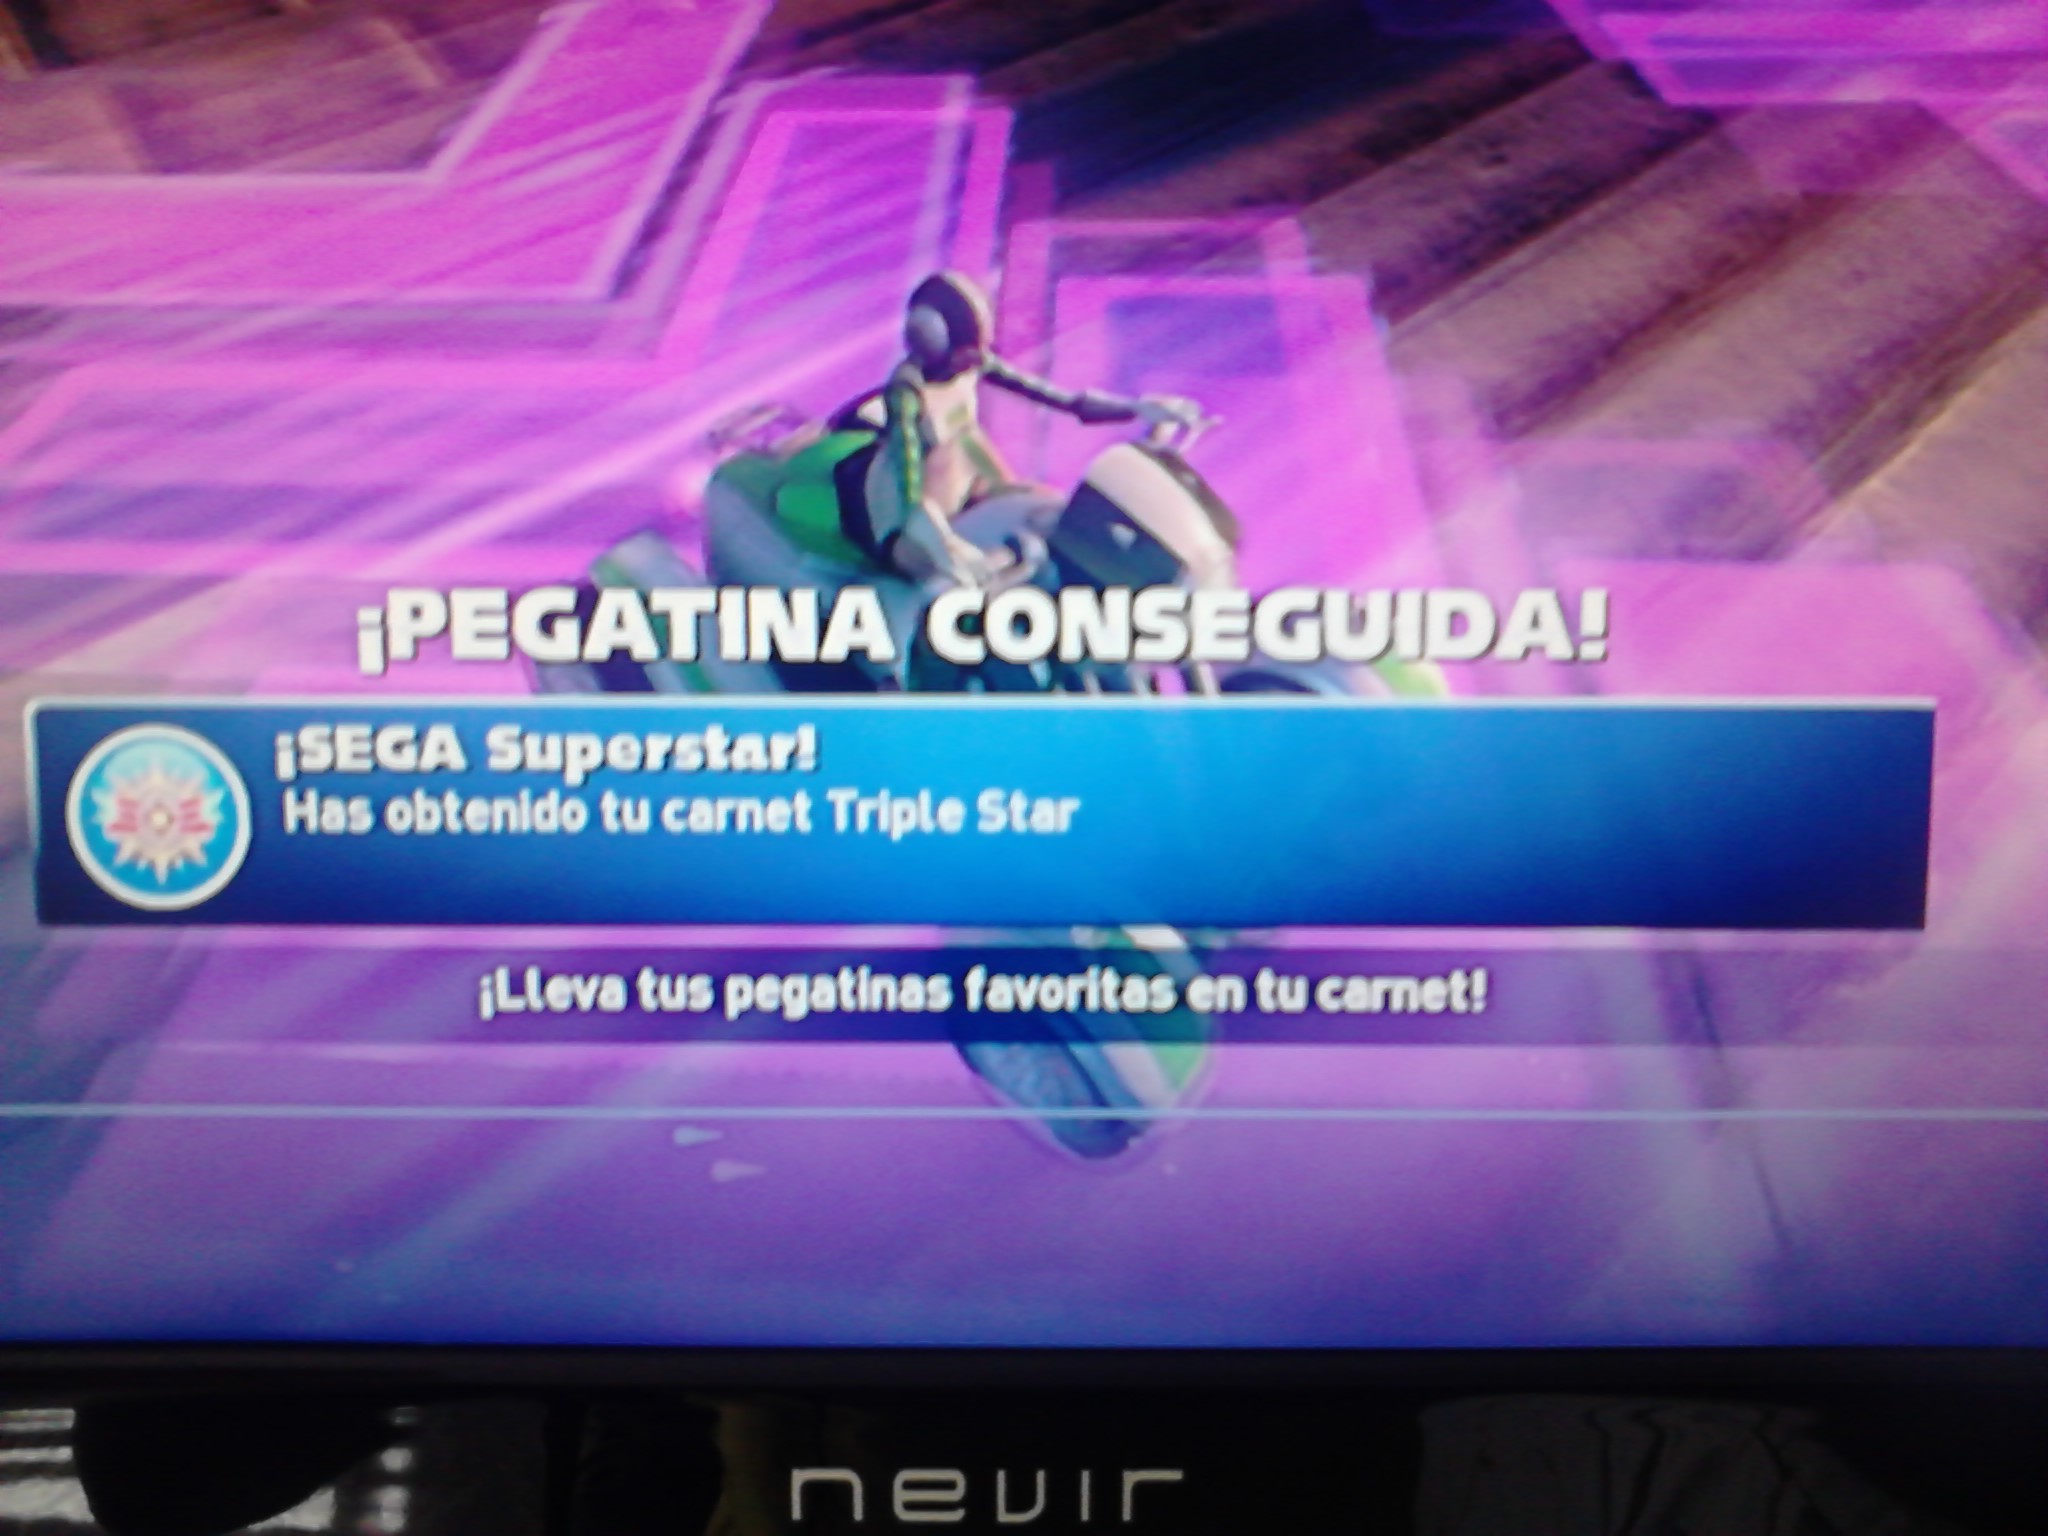 SEGA Superstar